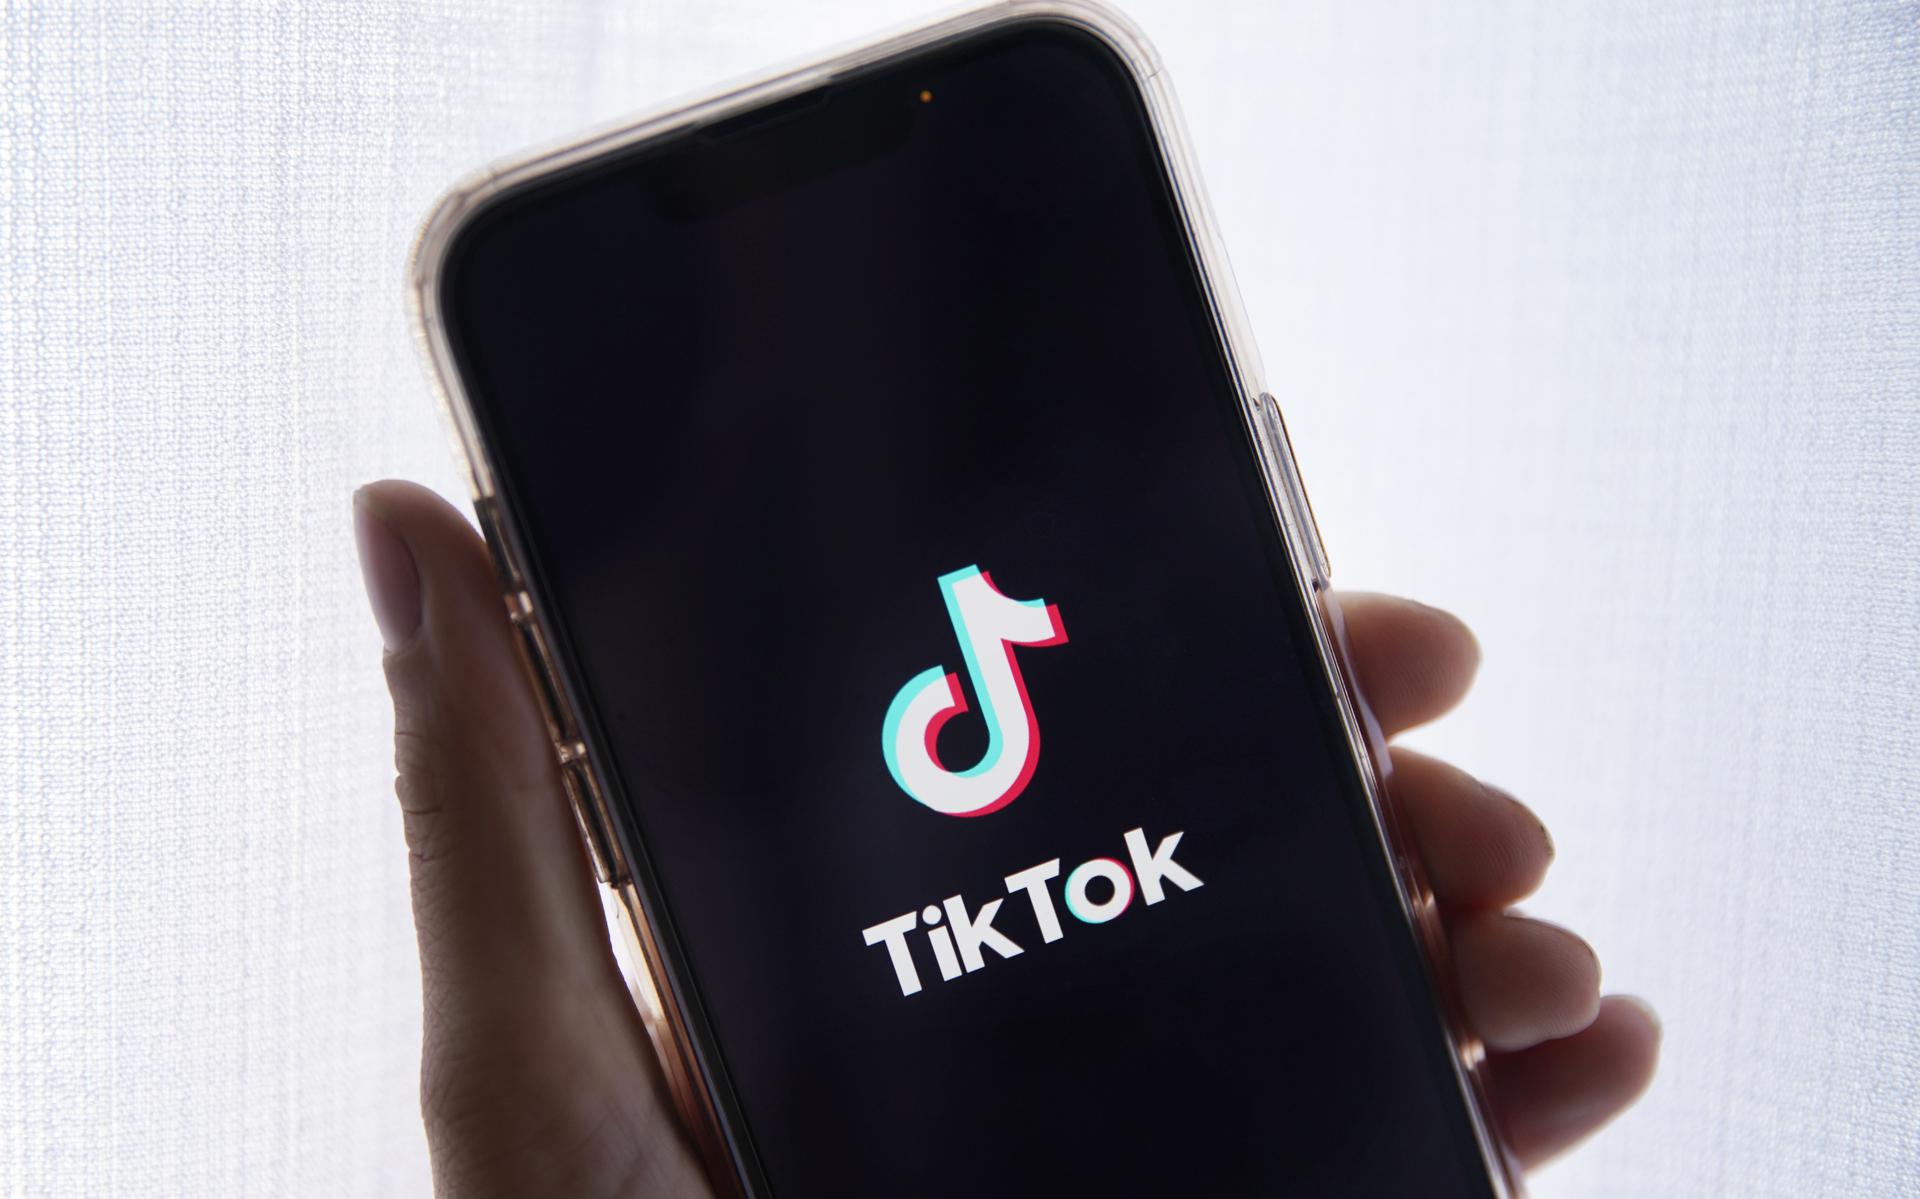 TikTok is razendpopulair, maar raakt steeds meer omstreden omdat er geen garanties zijn dat het Chinese moederbedrijf geen gevoelige gegevens doorbrief aan de regering in Peking. De provincie Groningen doet de app in de ban. 